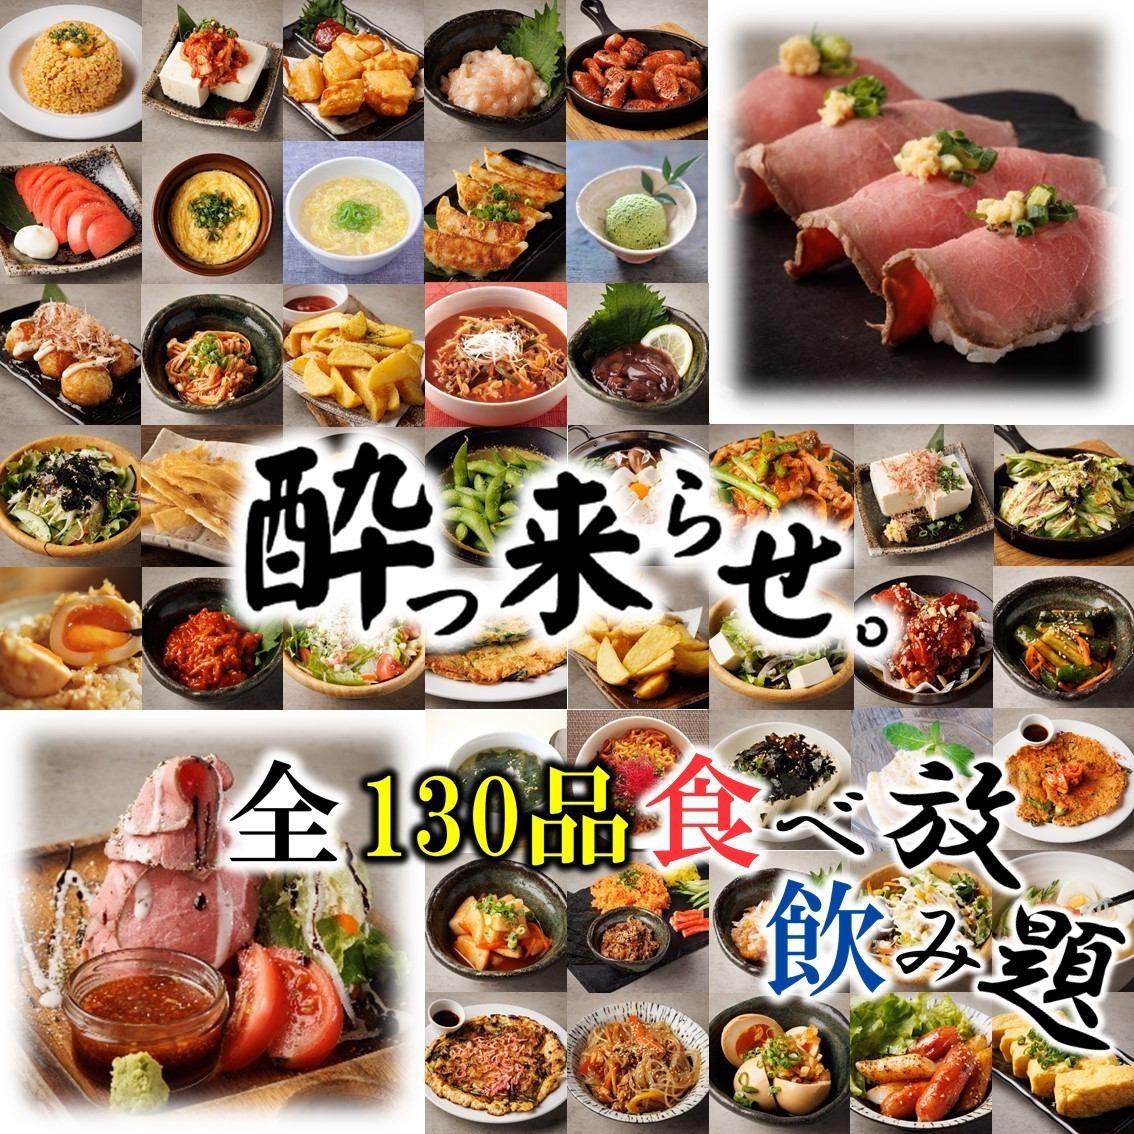 在川越可以尽情享用肉寿司和烤牛肉的性价比最高的居酒屋开业☆